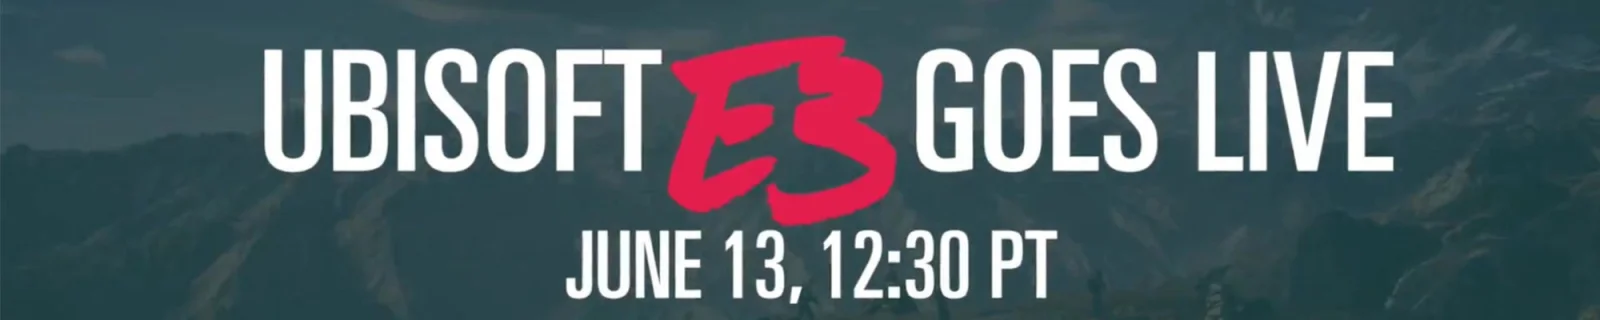 育碧开始预热E3 2016了